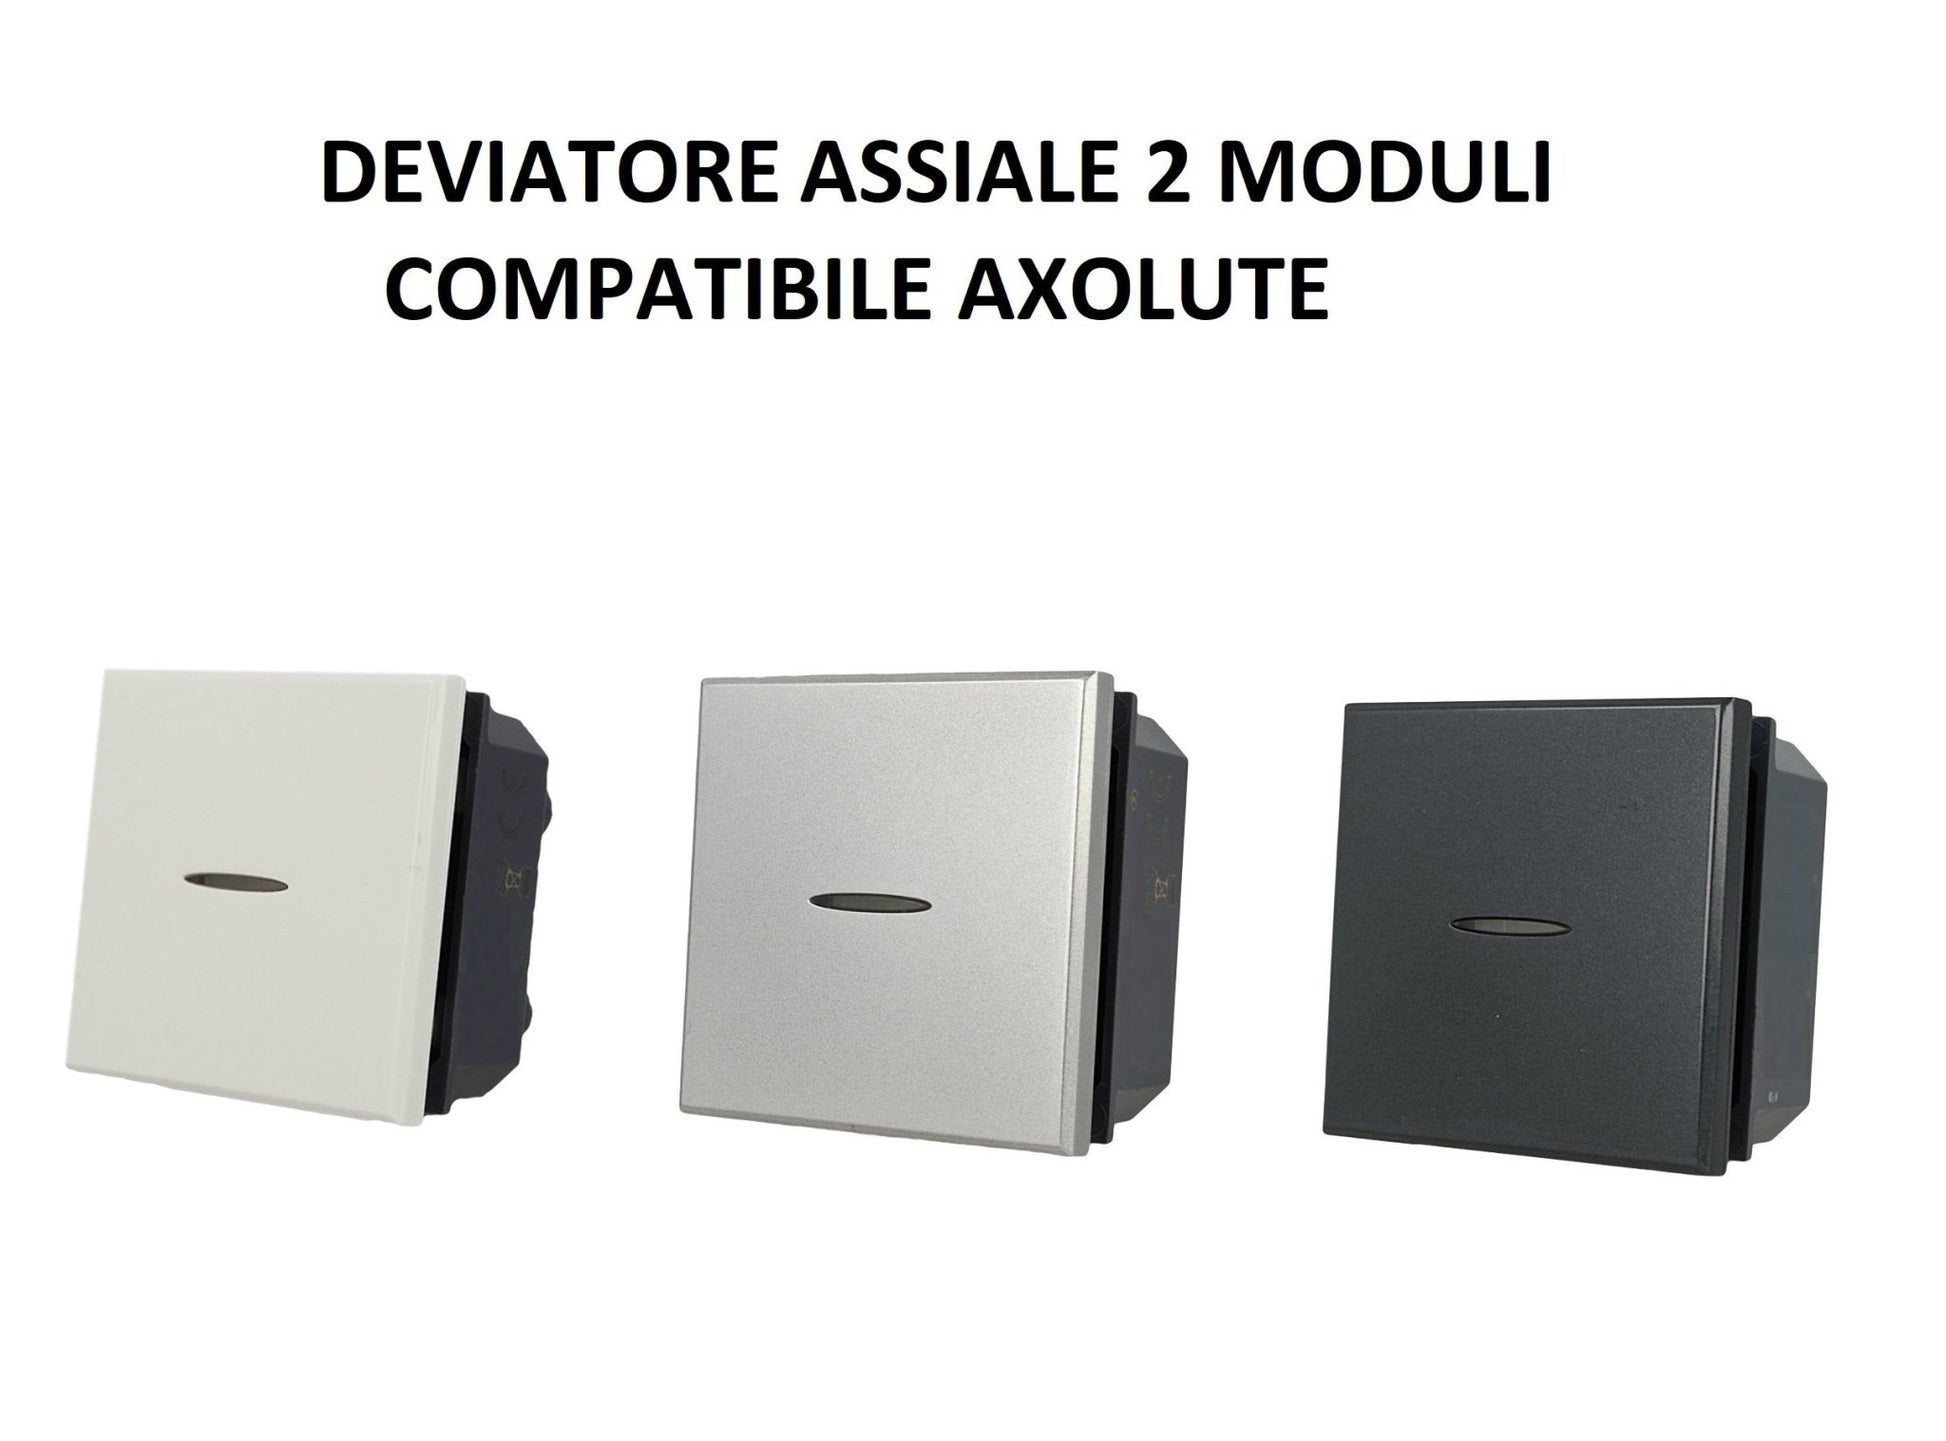 Deviatore Assiale 2M moduli Unipolare da incasso Bianco Silver Nero compatibile Bticino Axolute - puntoluceled